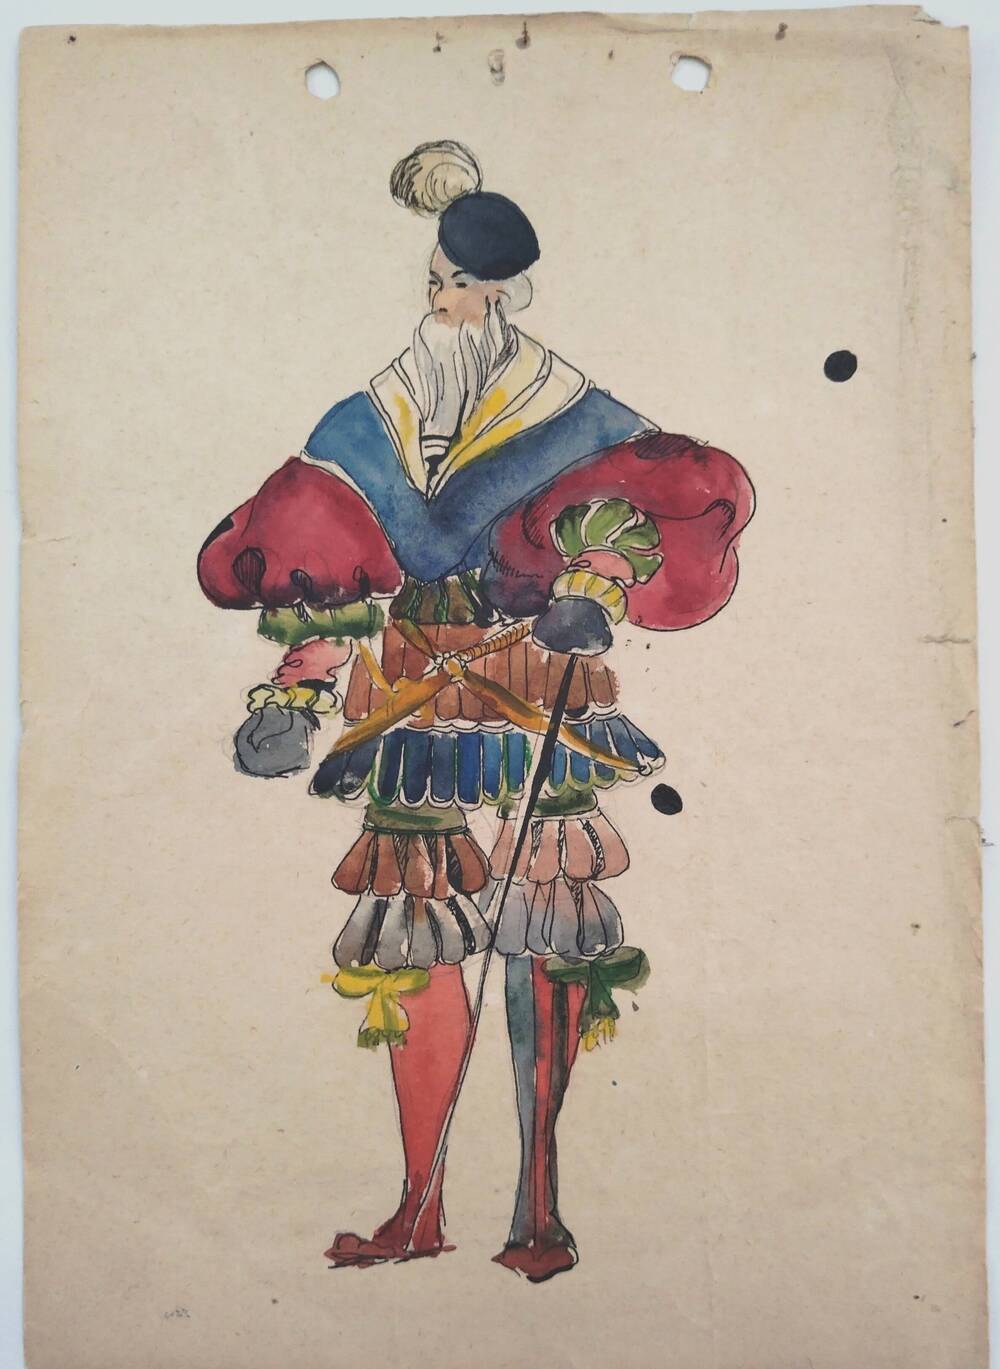 Чернышова Г.А. Эскиз (15-16 в) мужского костюма эпохи Возрождения (16 в) (театрализованный). Мужчина в берете с пером и шпагой.